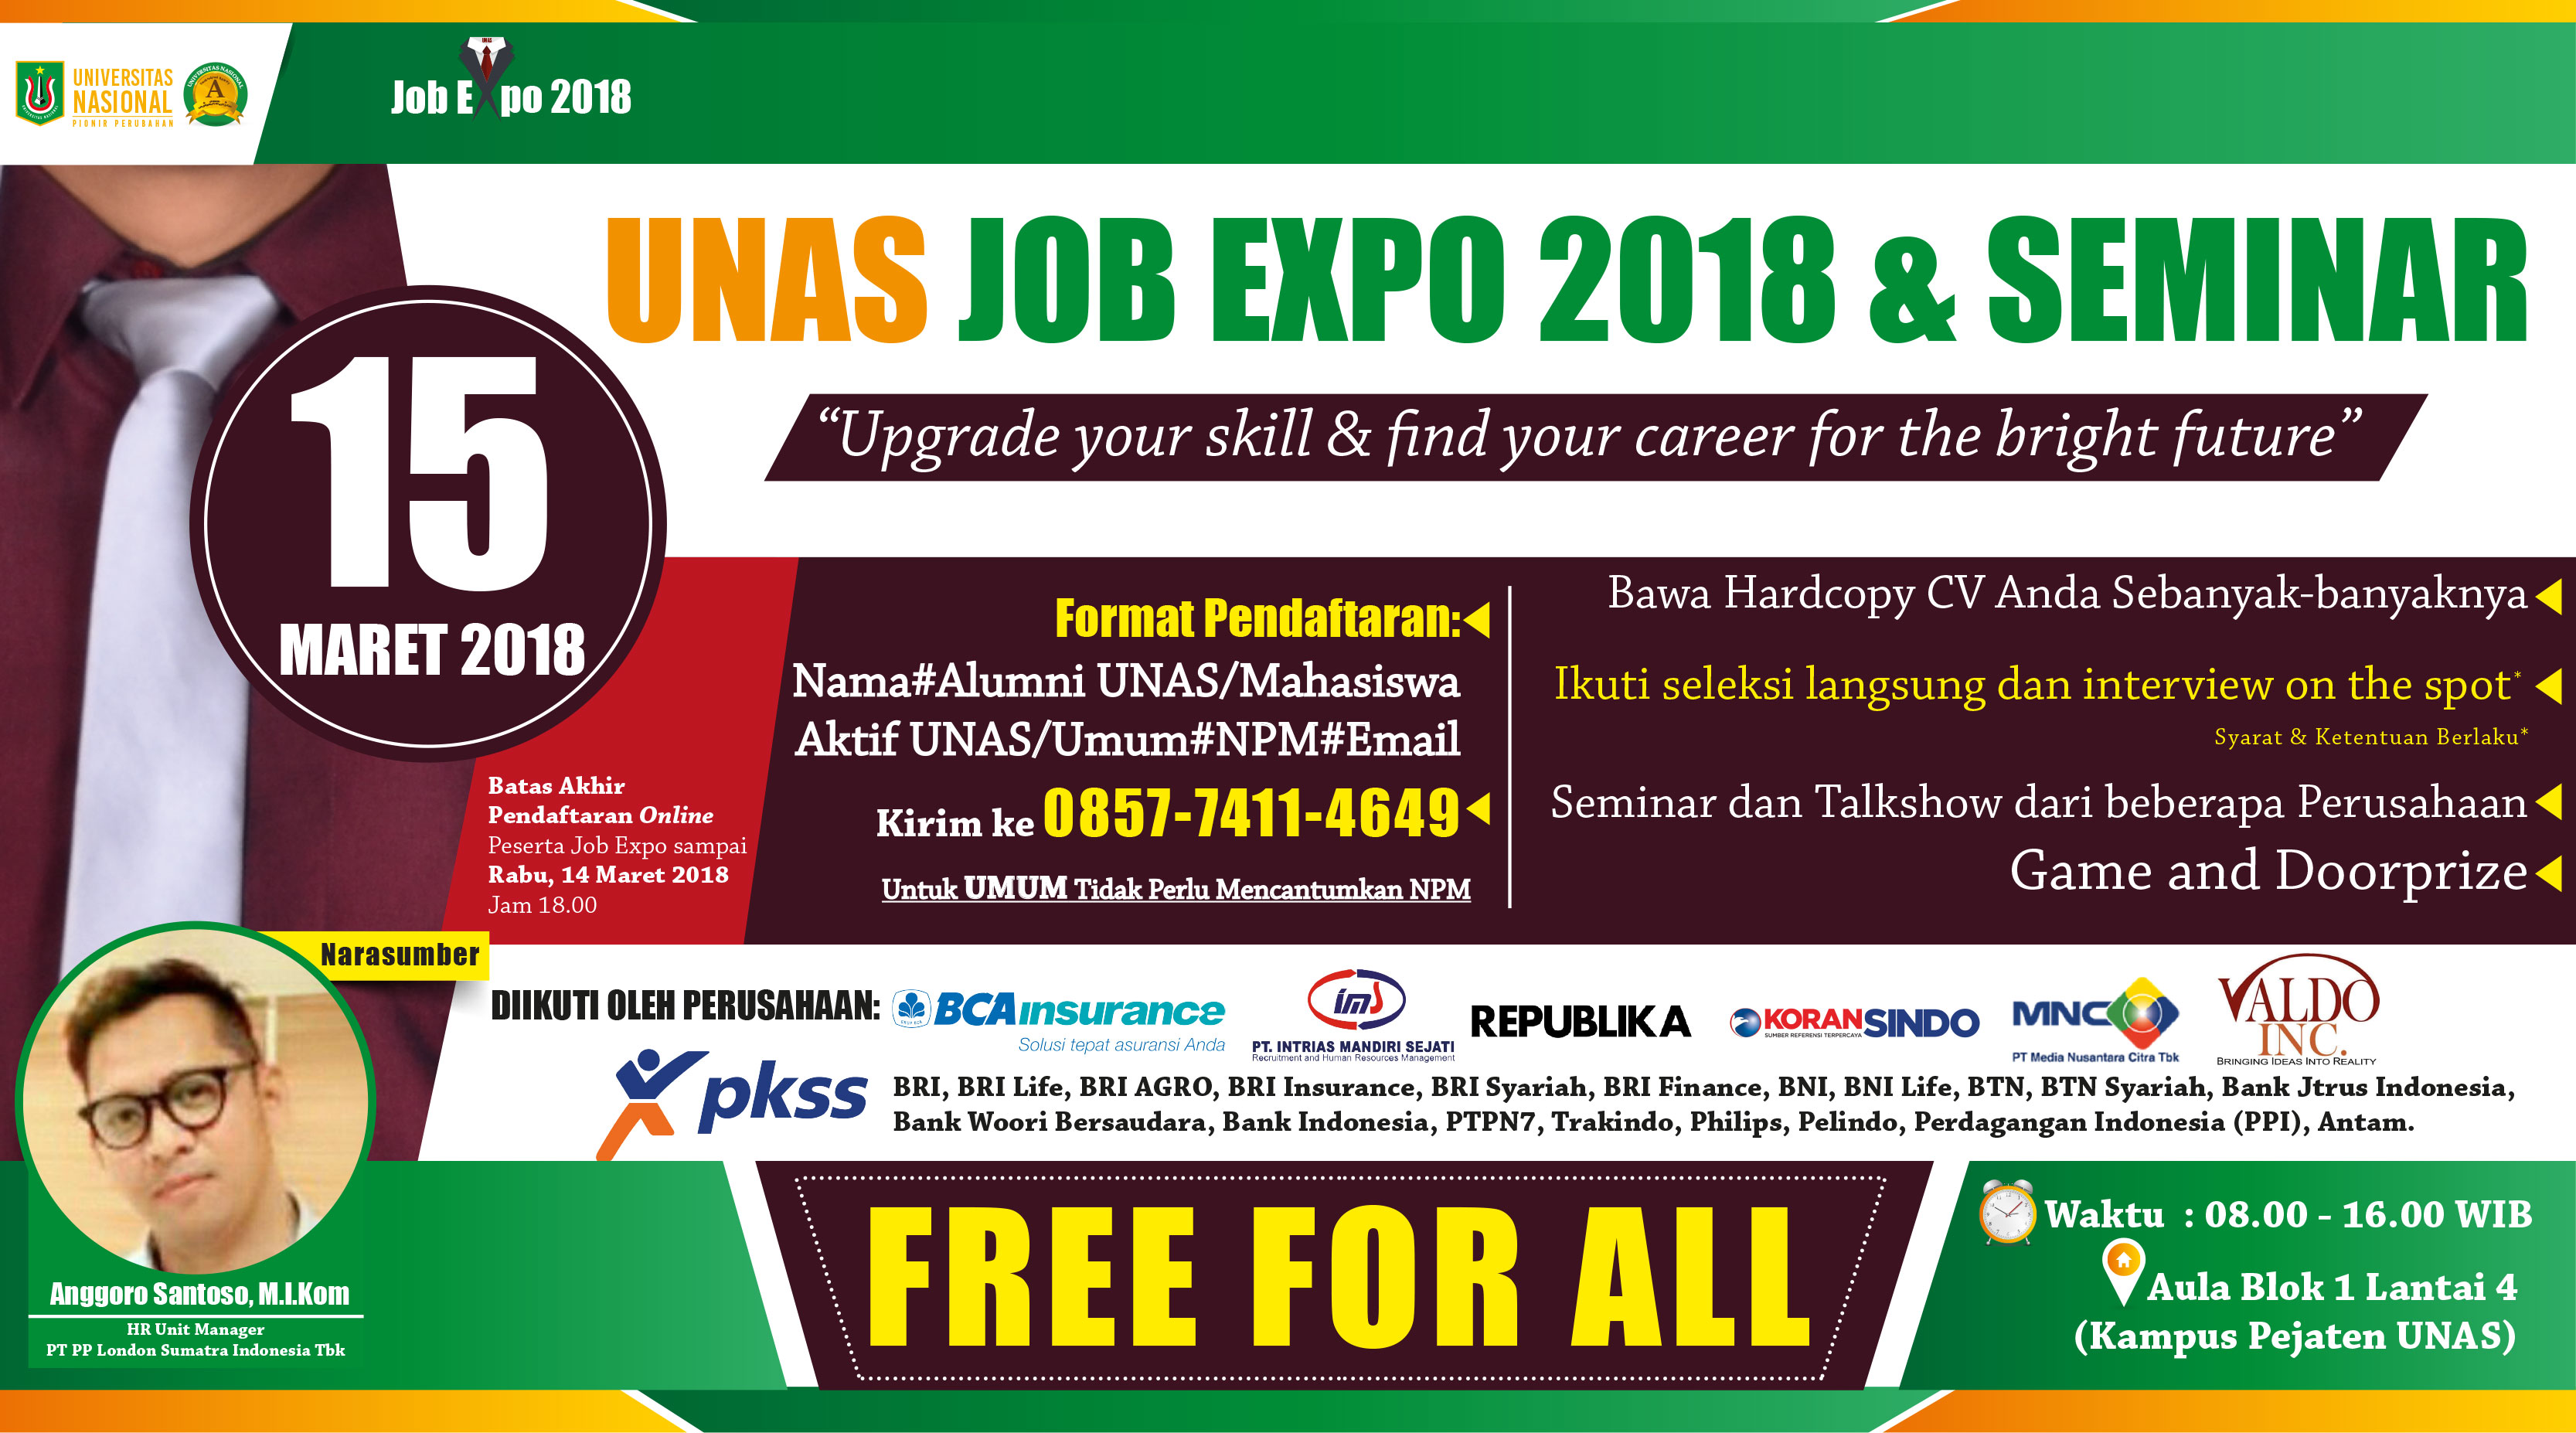 web-banner-job-expo-unas-2018